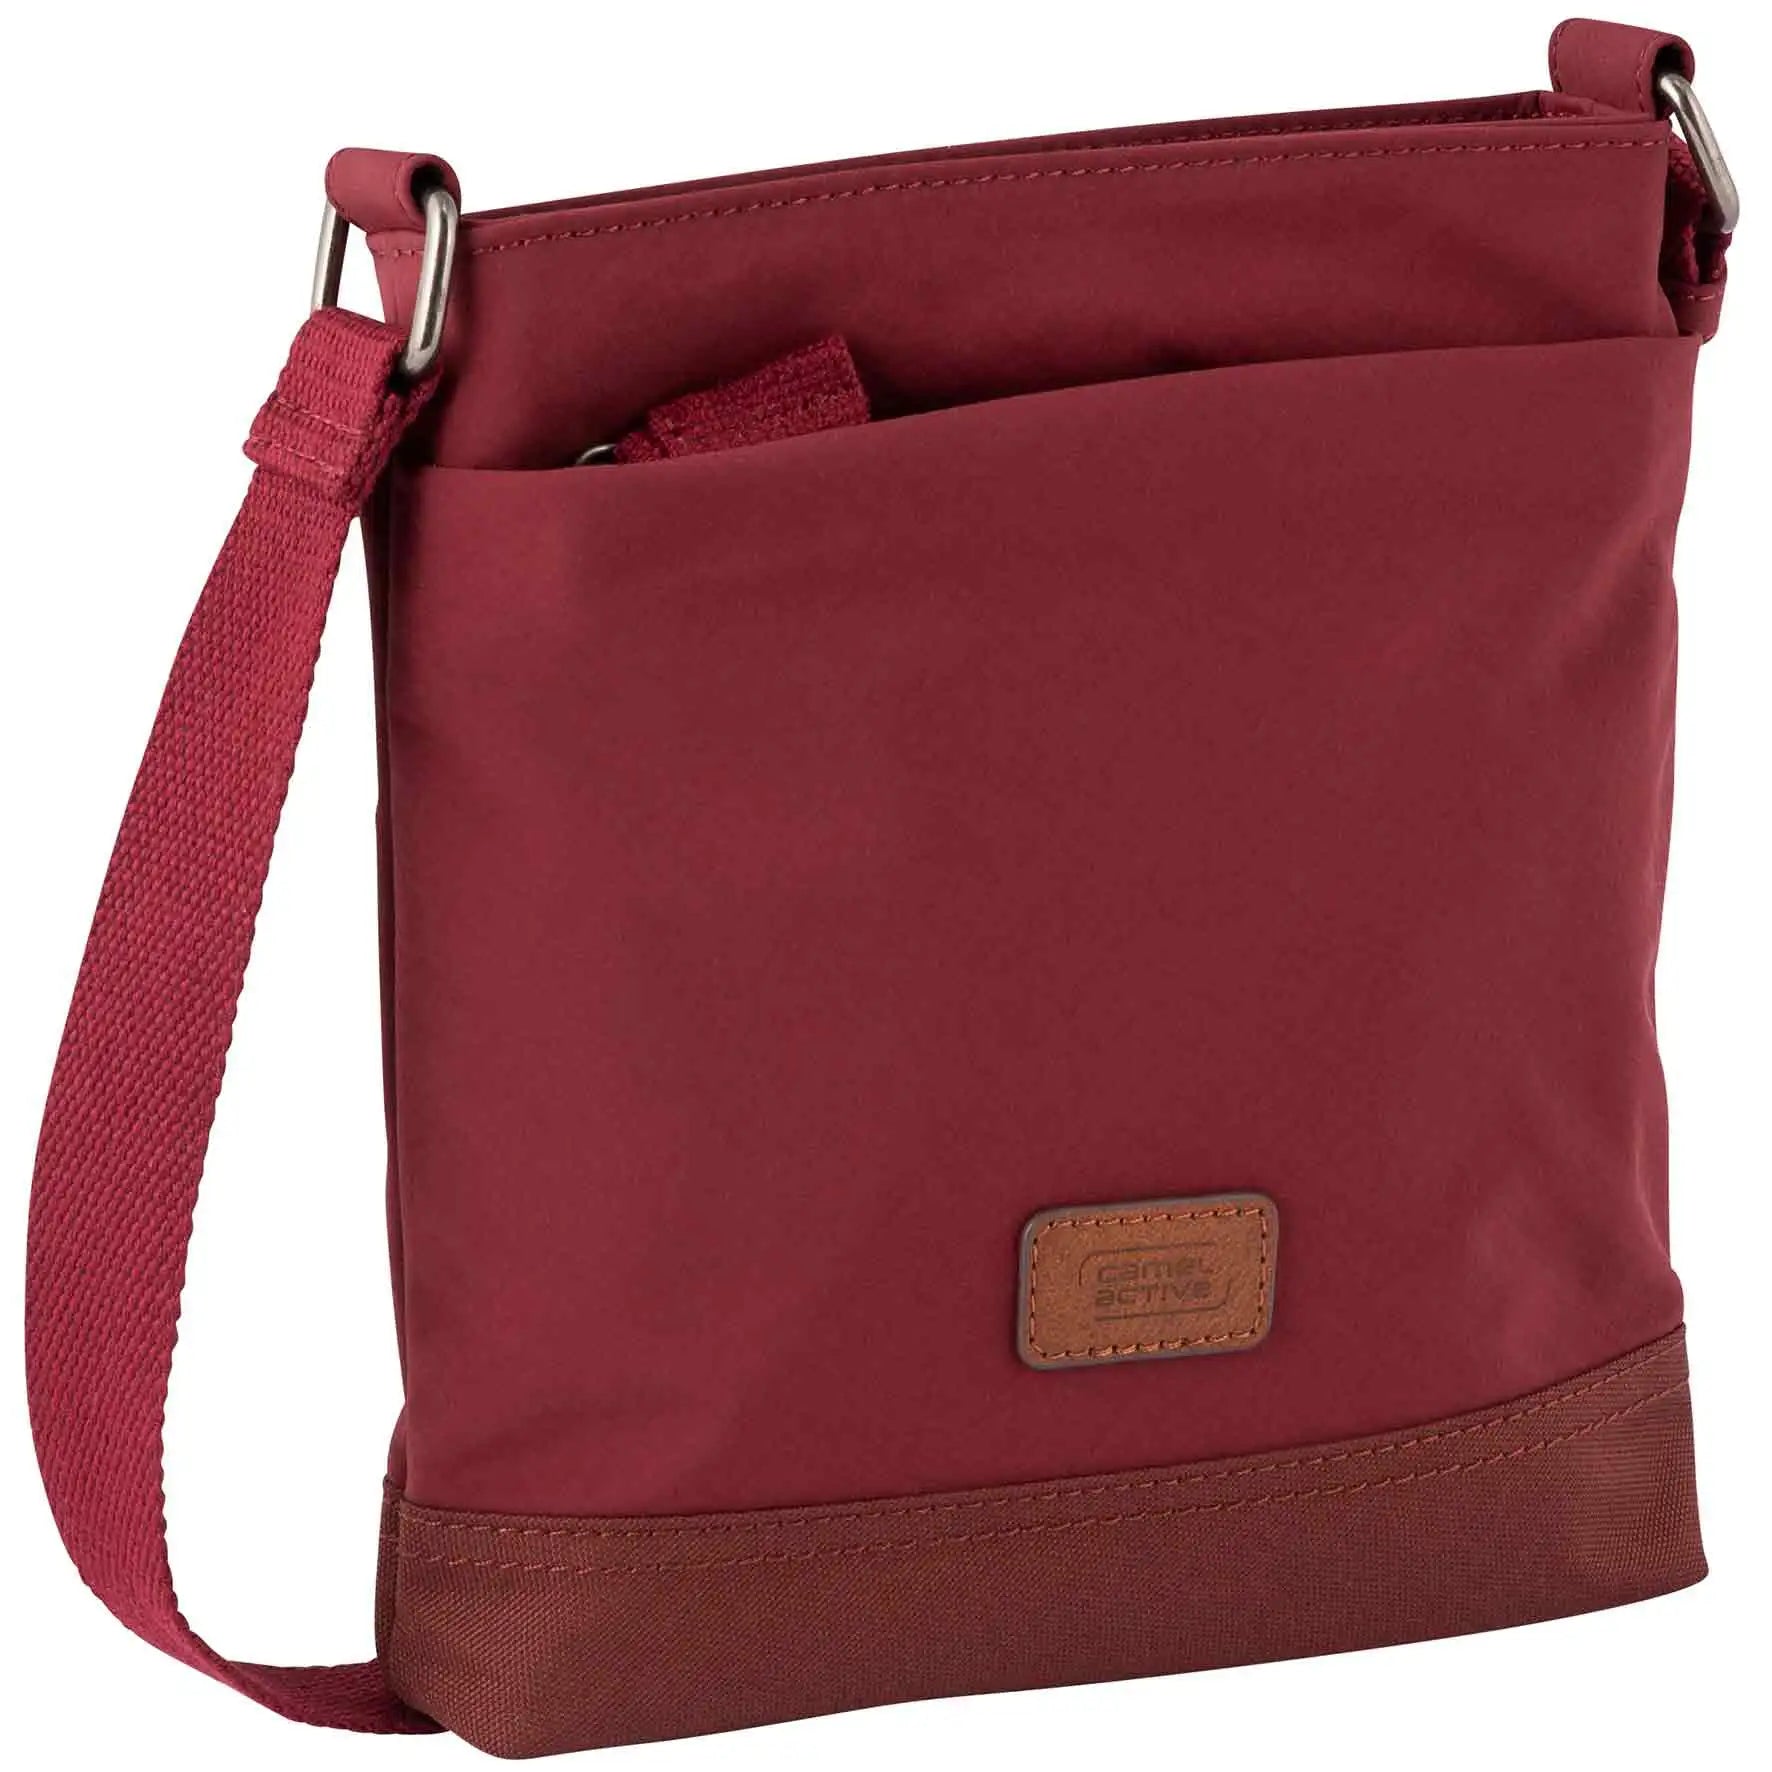 Camel Active Cross Bag S 22 cm - Dark Red